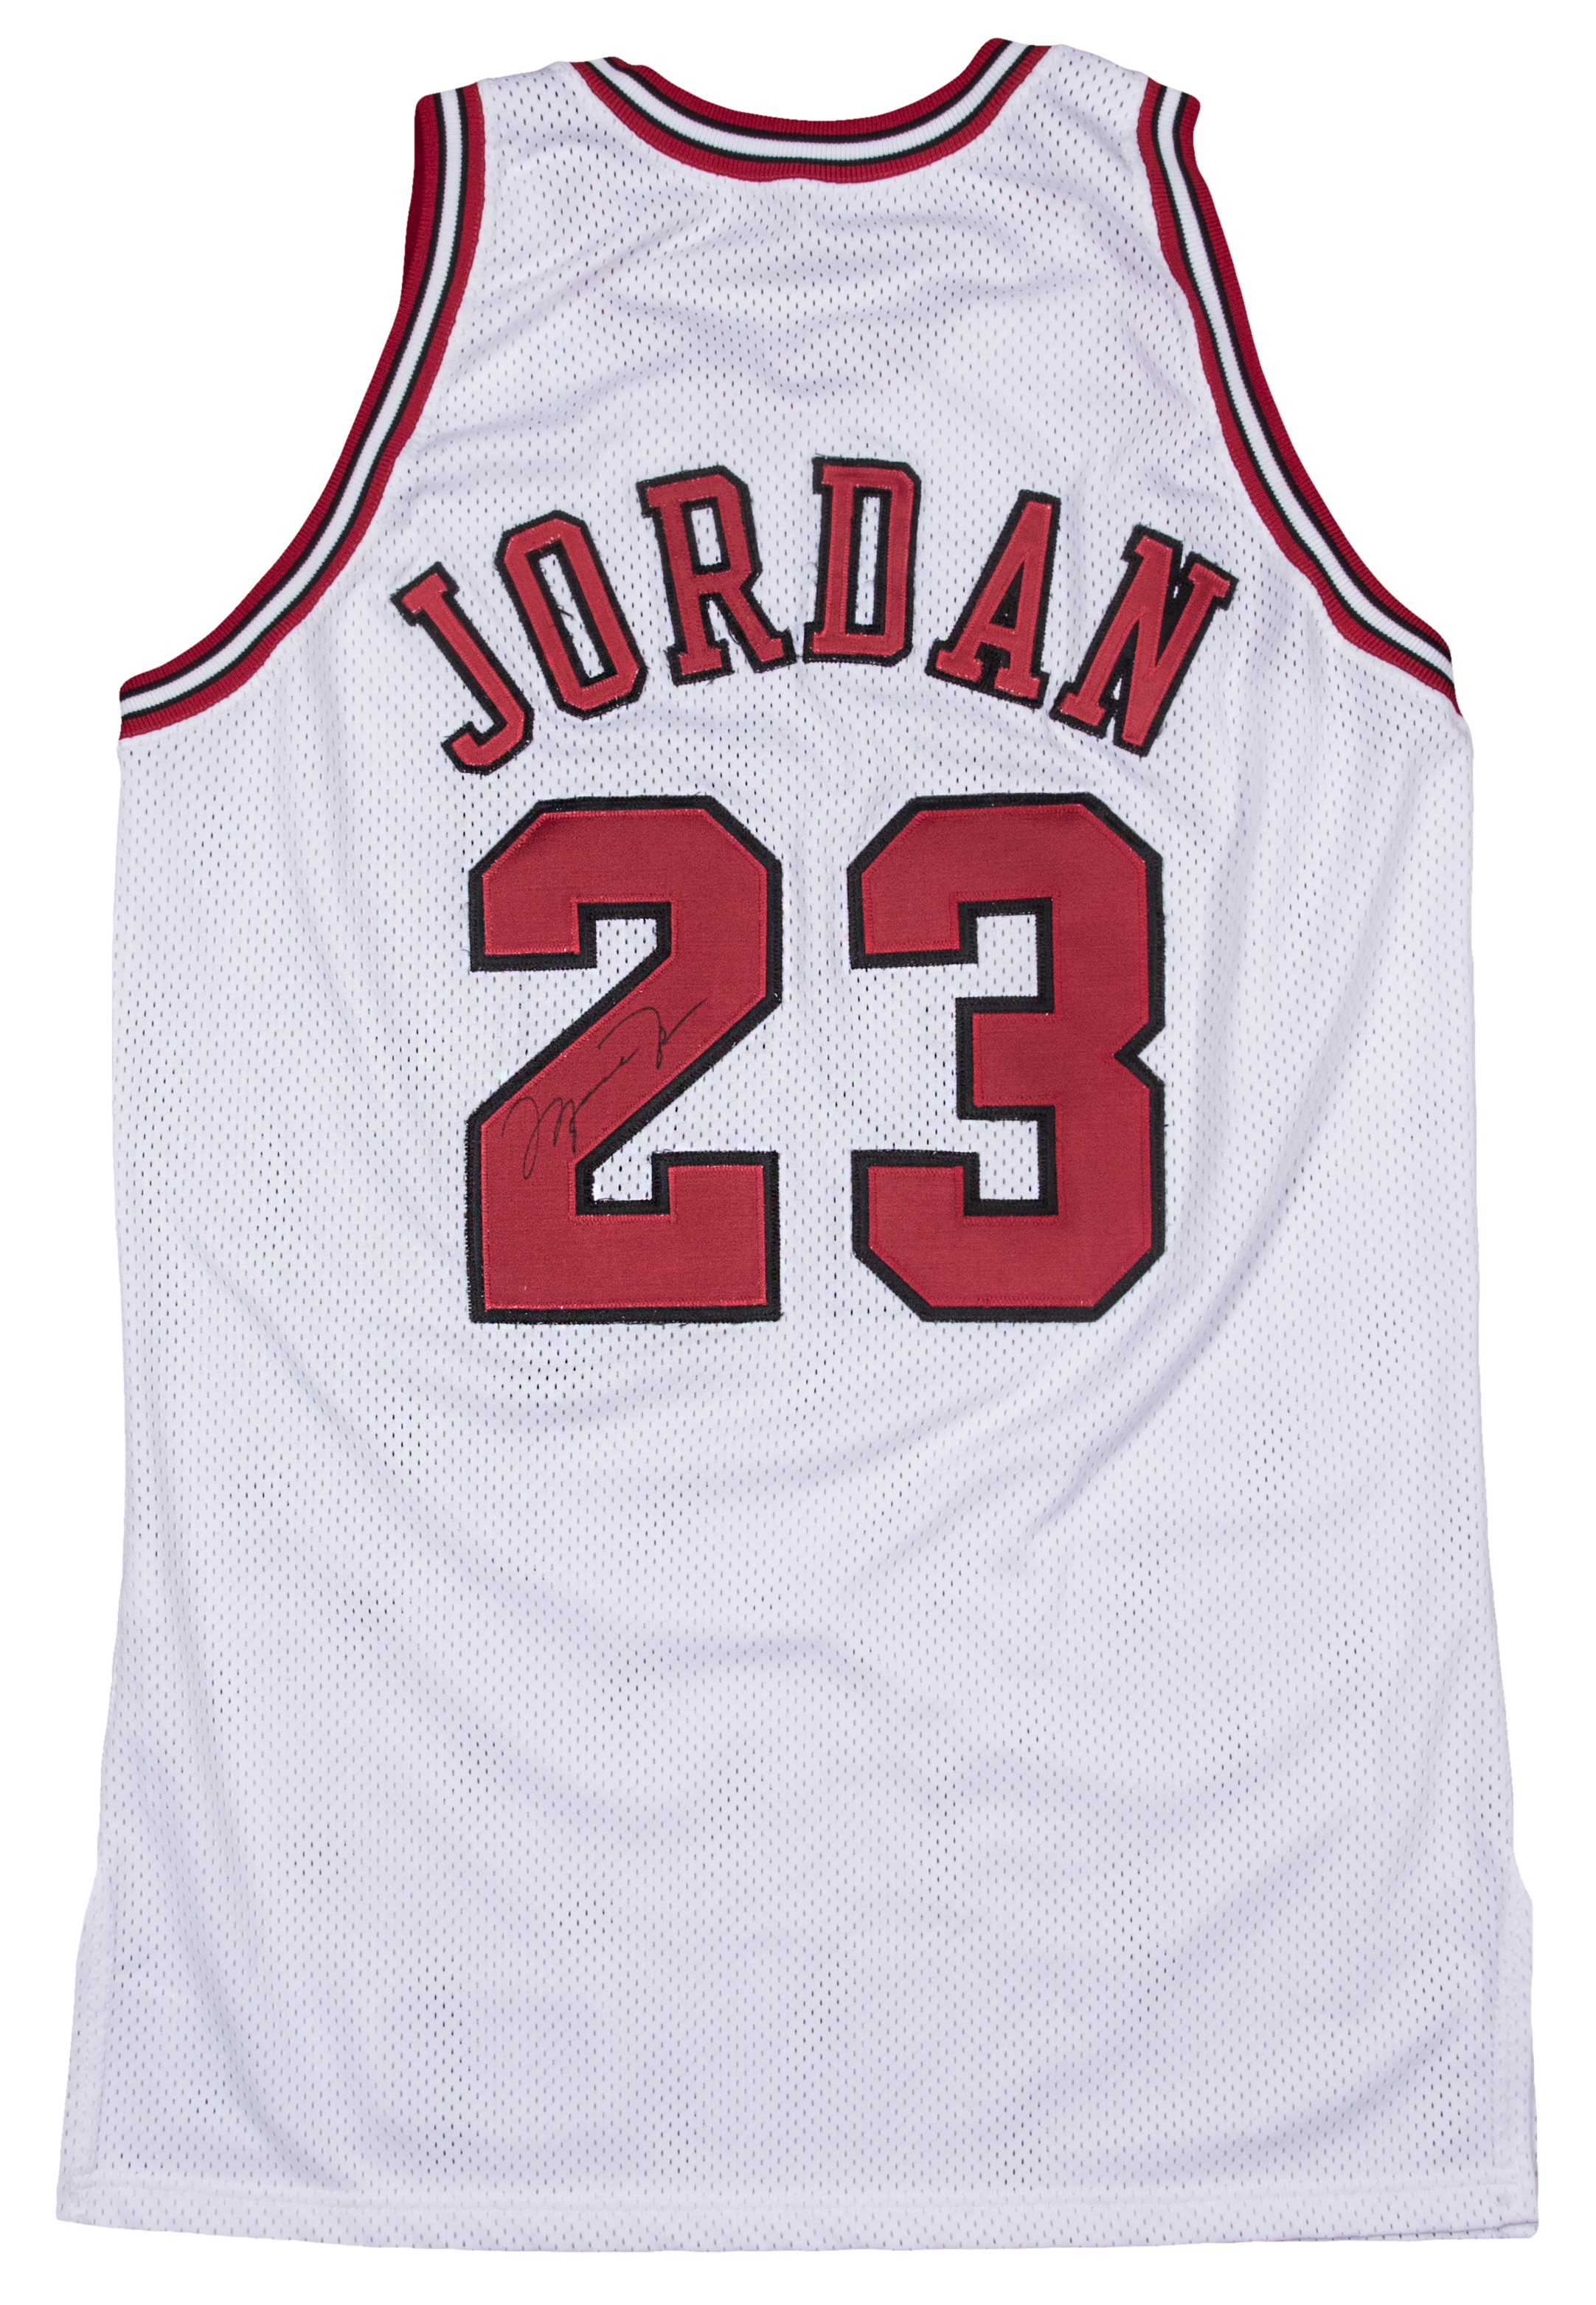 michael jordan game worn jersey signed